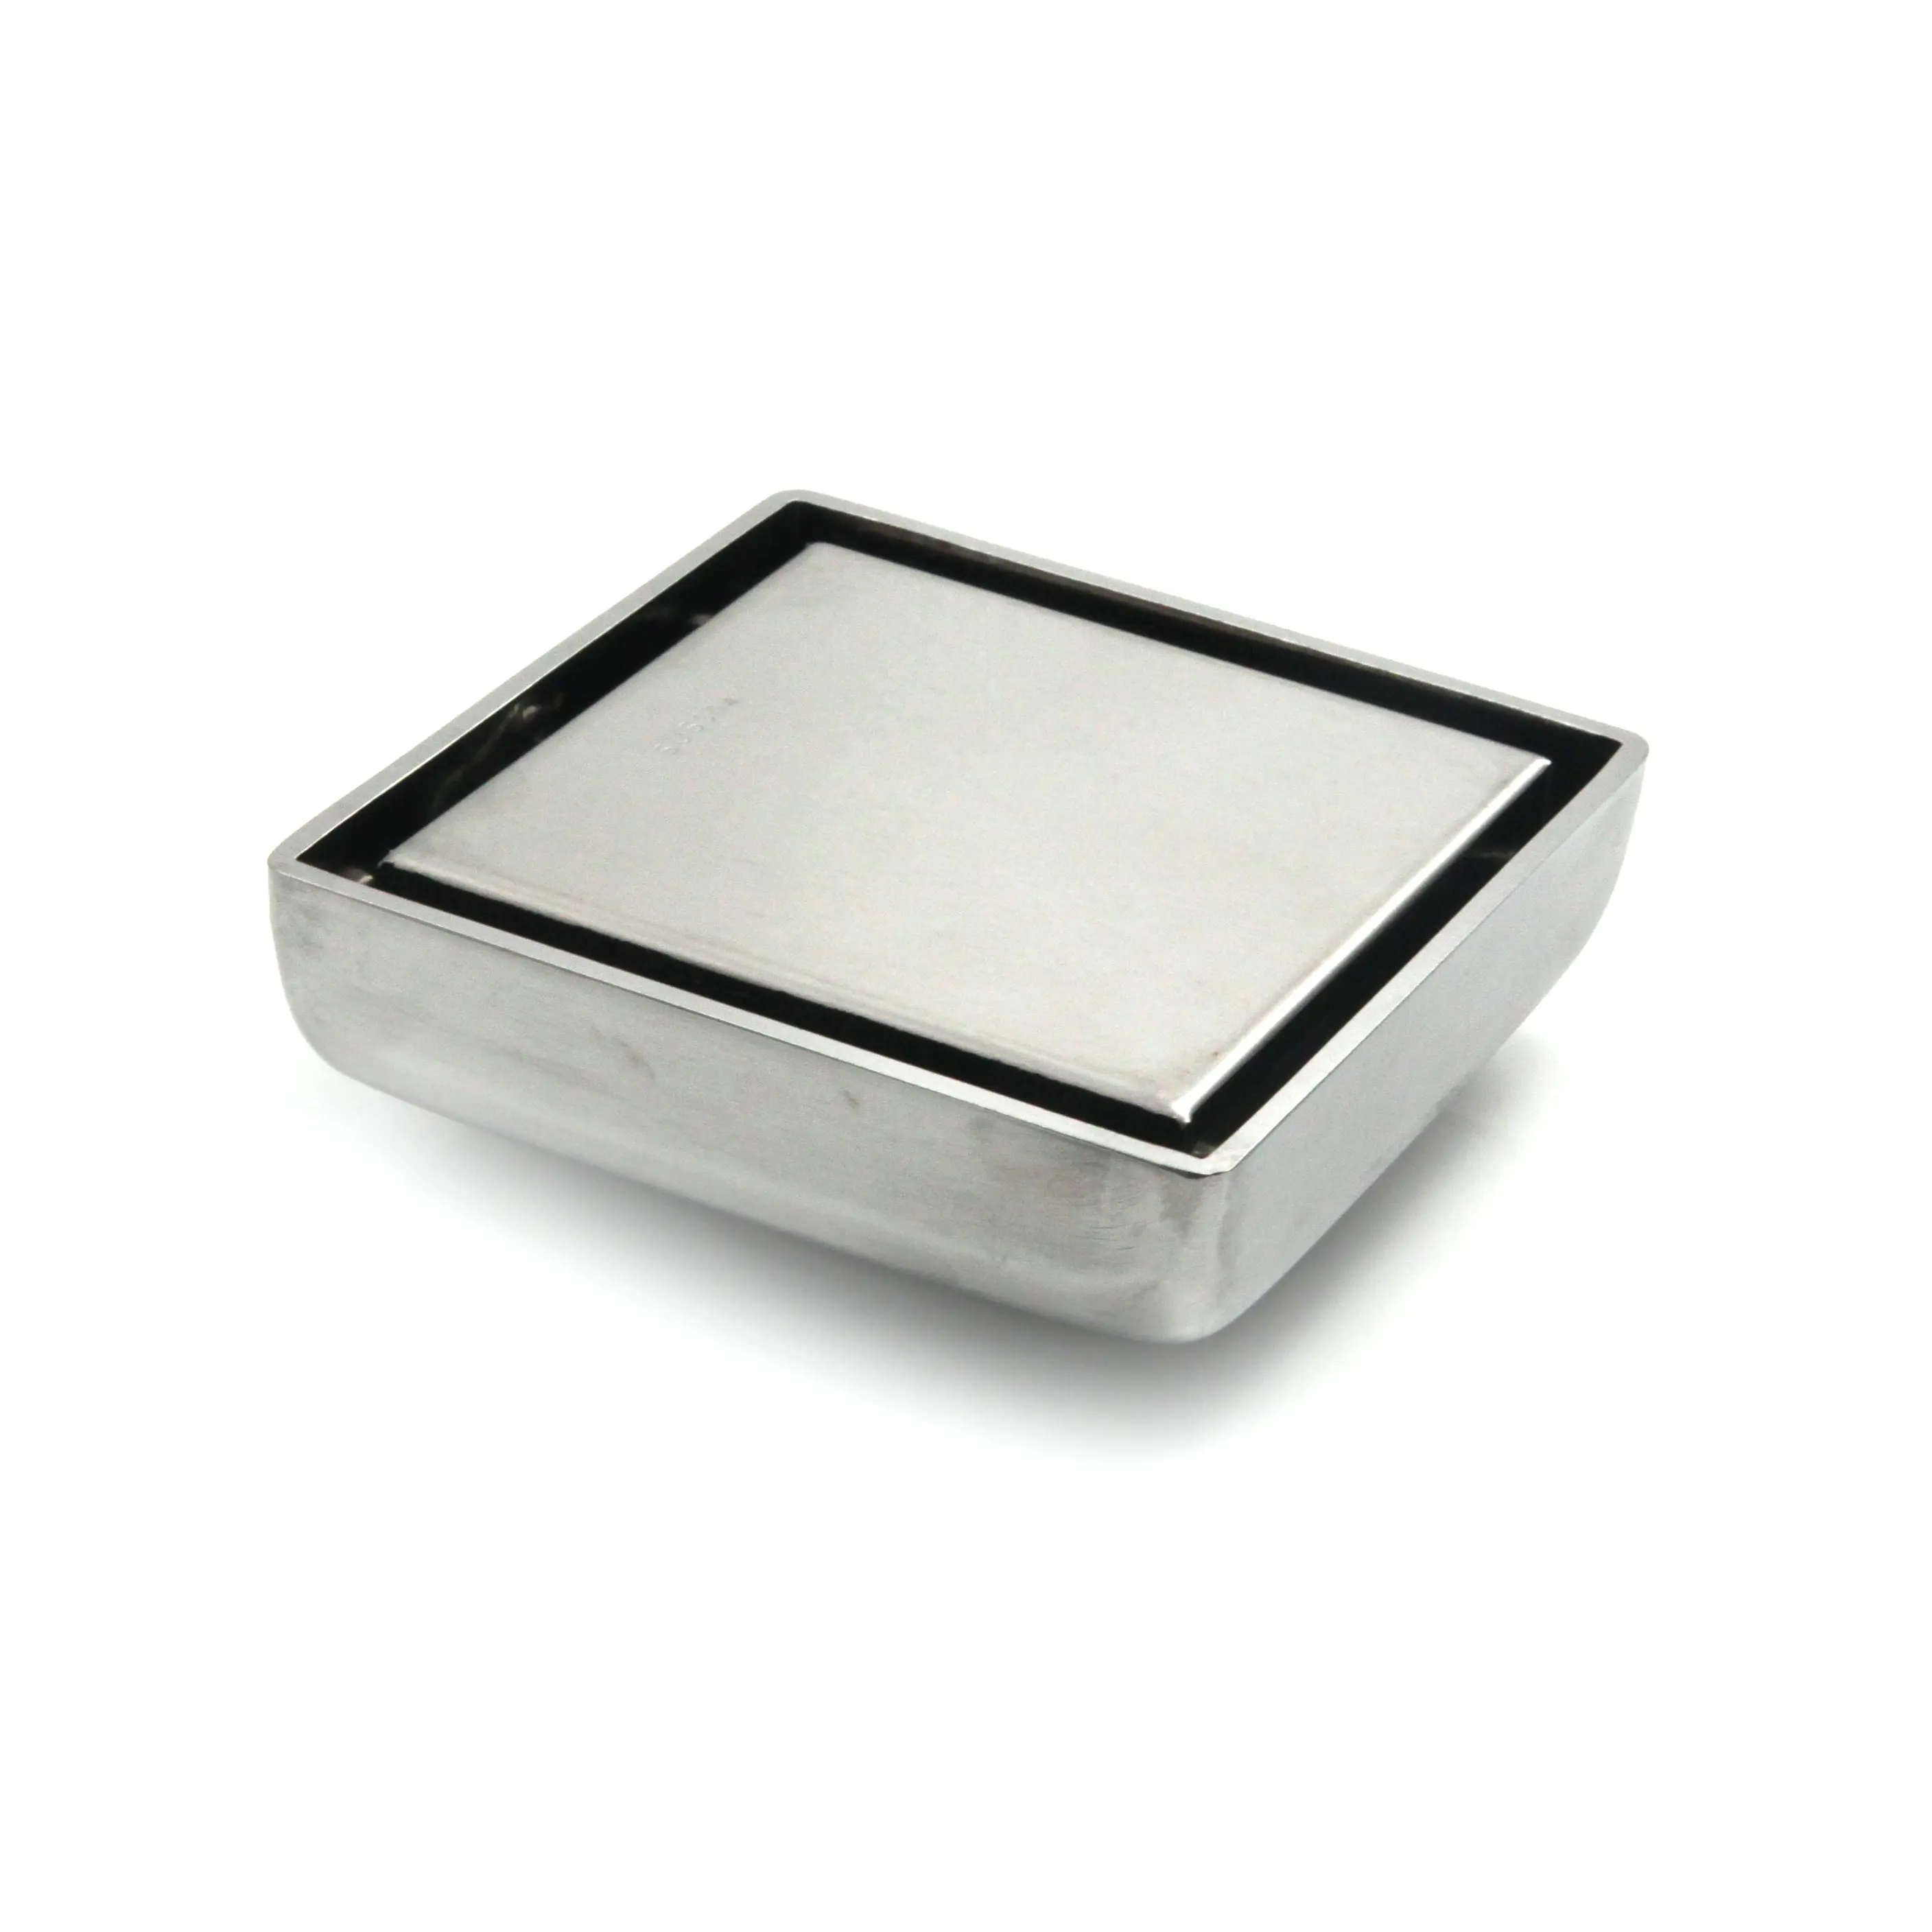 GUIDA 1 x8112 inserto per piastrelle quadrato griglia invisibile coperchio filtro scolapiatti per bagno spazzolato SS scarico a pavimento